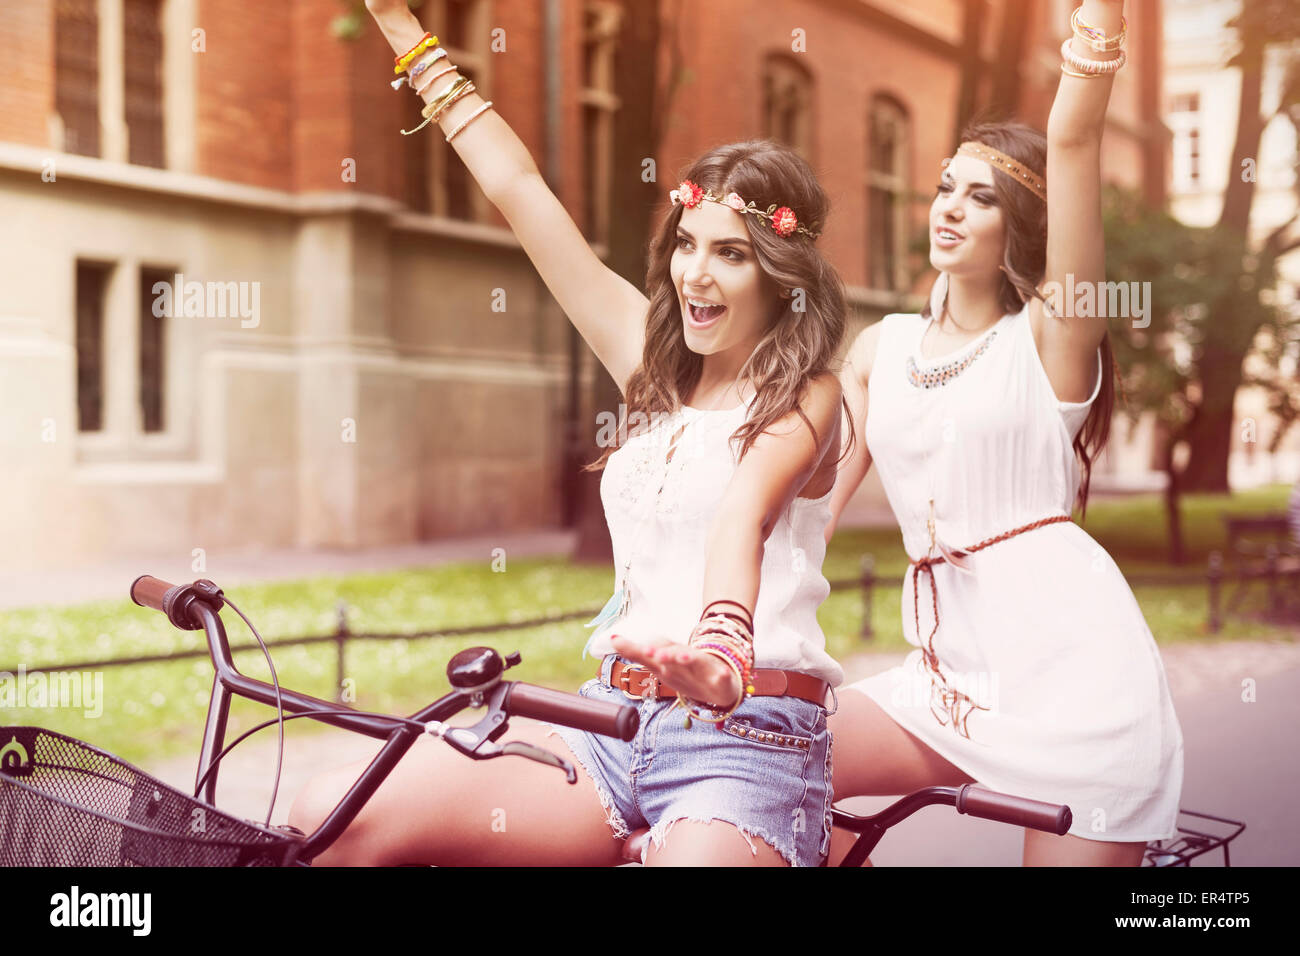 Summertime is in the air for boho girls. Krakow, Poland Stock Photo